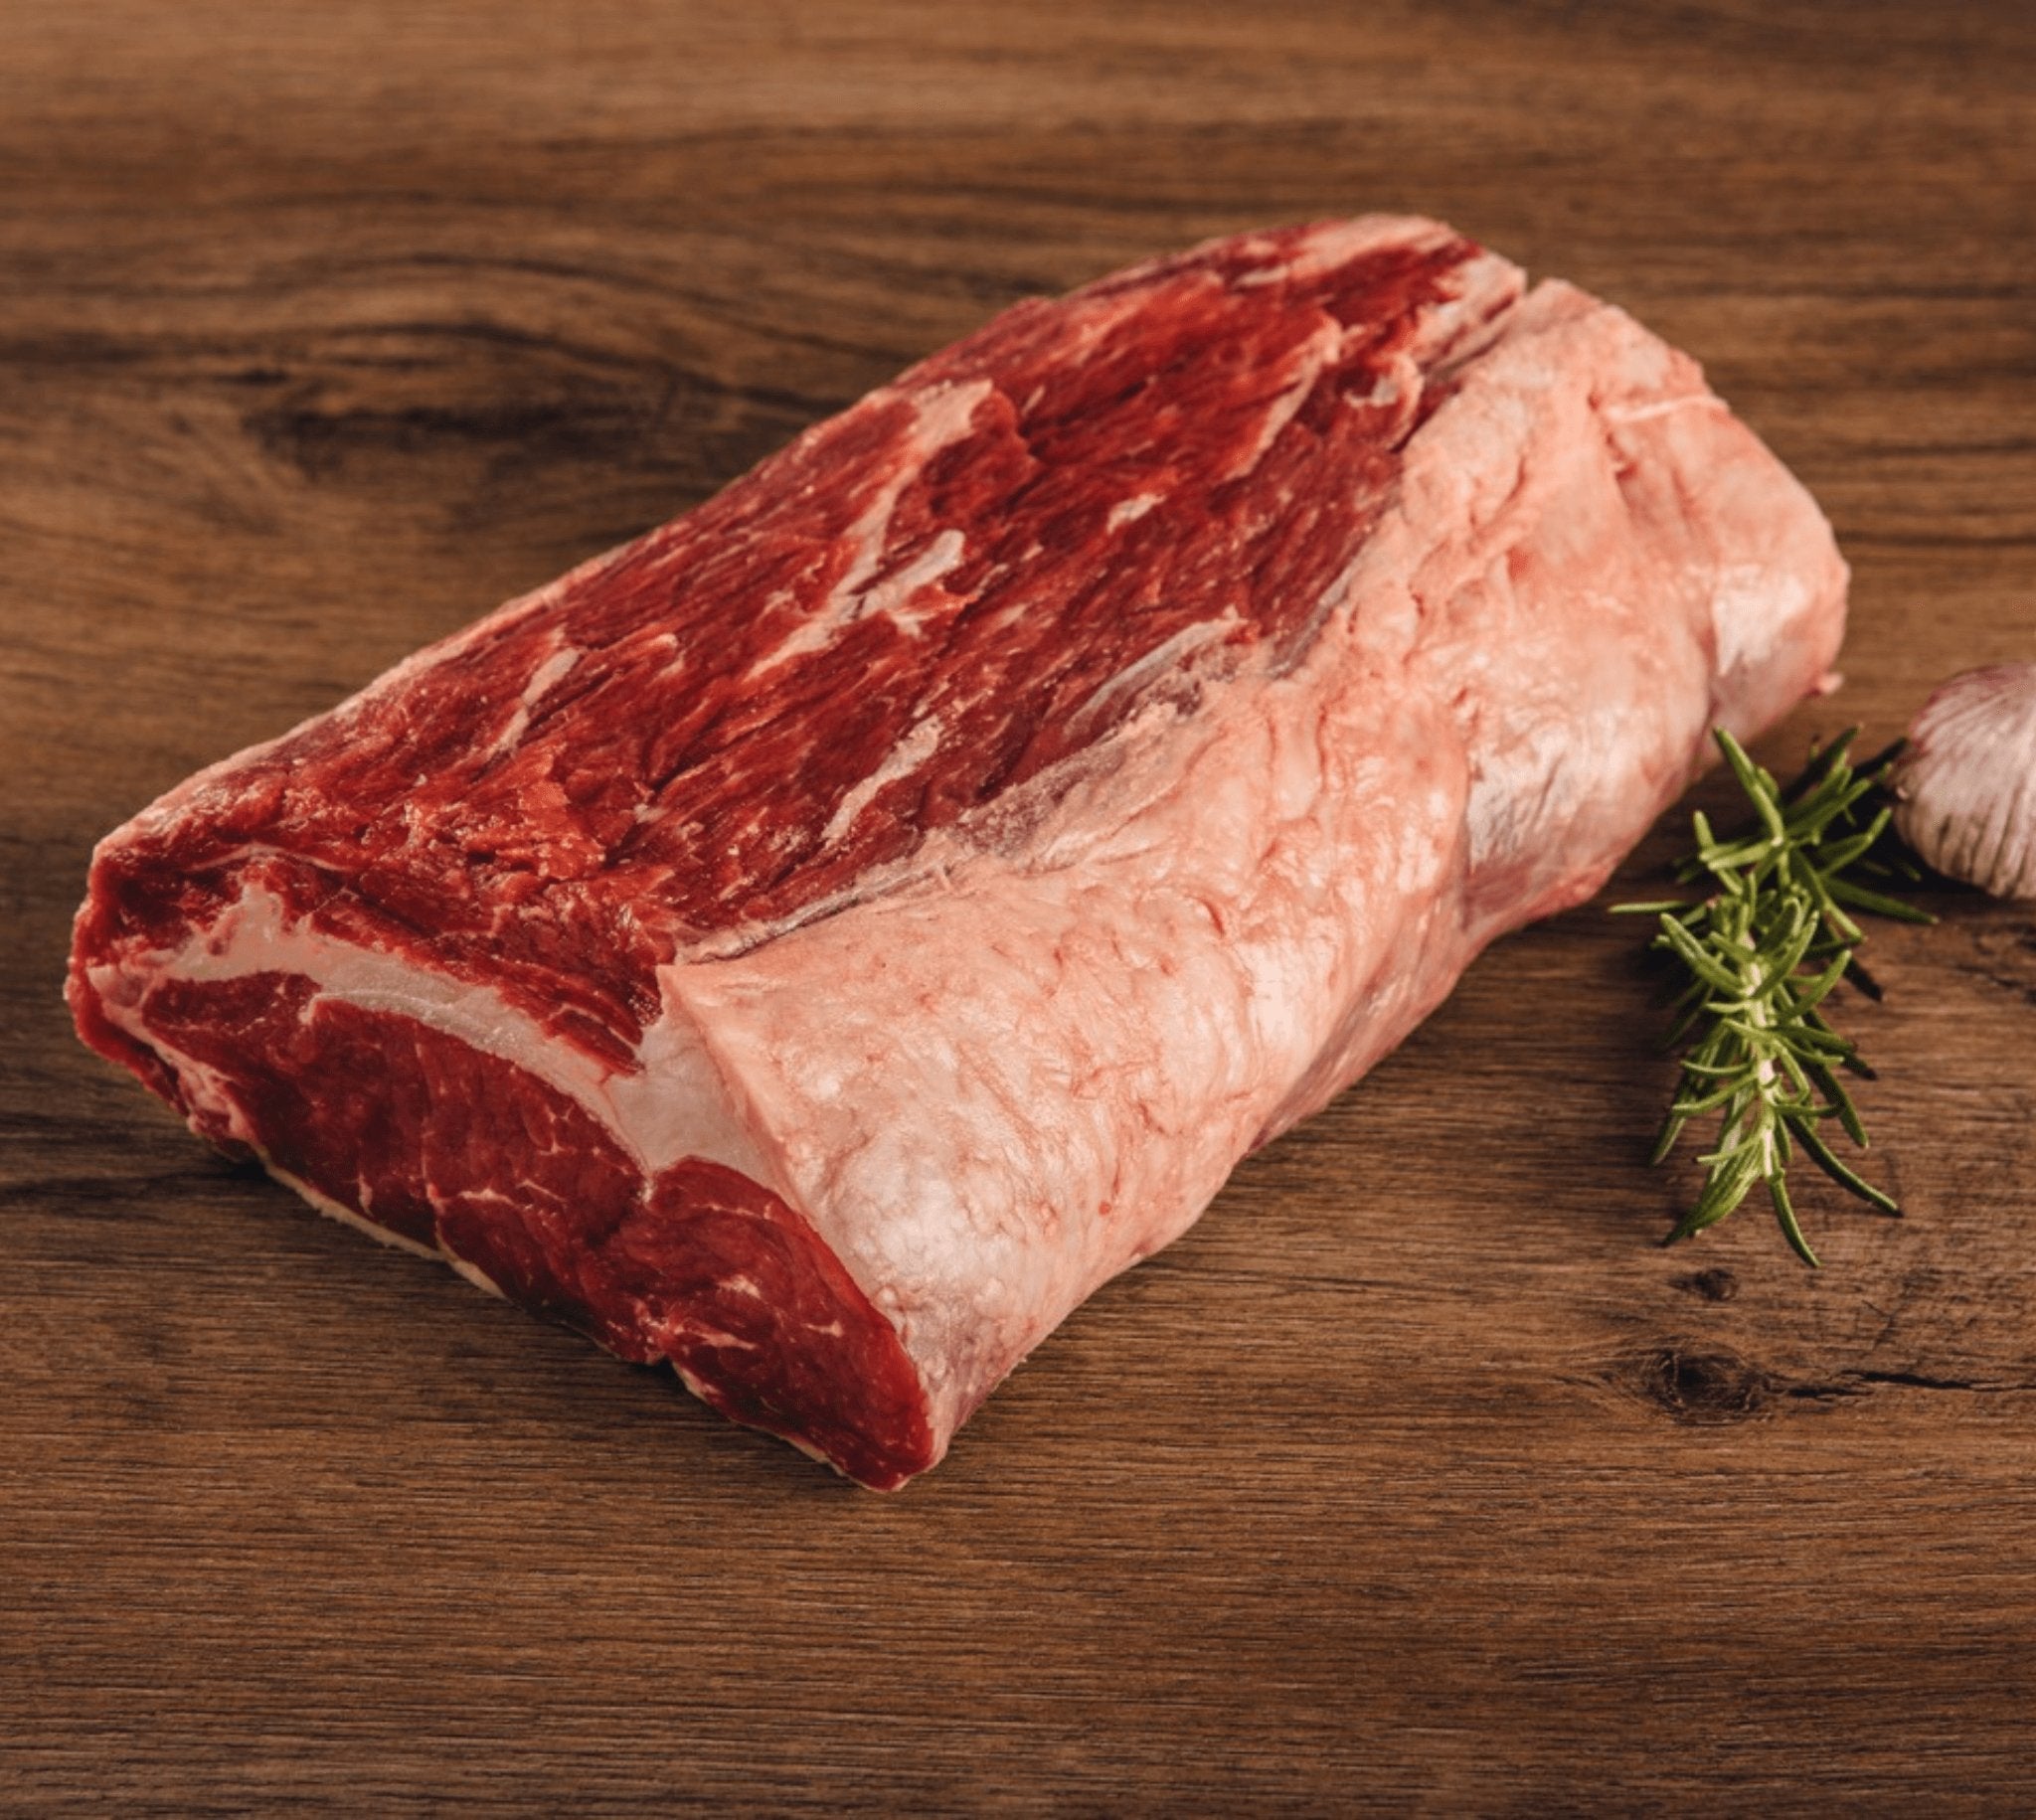 Das Geheimnis vom Dry Aged Büffelfleisch Dry Aging ist ein traditionelles Verfahren der Fleischreifung, bei dem ganze Stücke vom Büffel unter kontrollierten Bedingungen gelagert werden, um deren Geschmack und Textur zu verbessern. Das Verfahren beginnt da